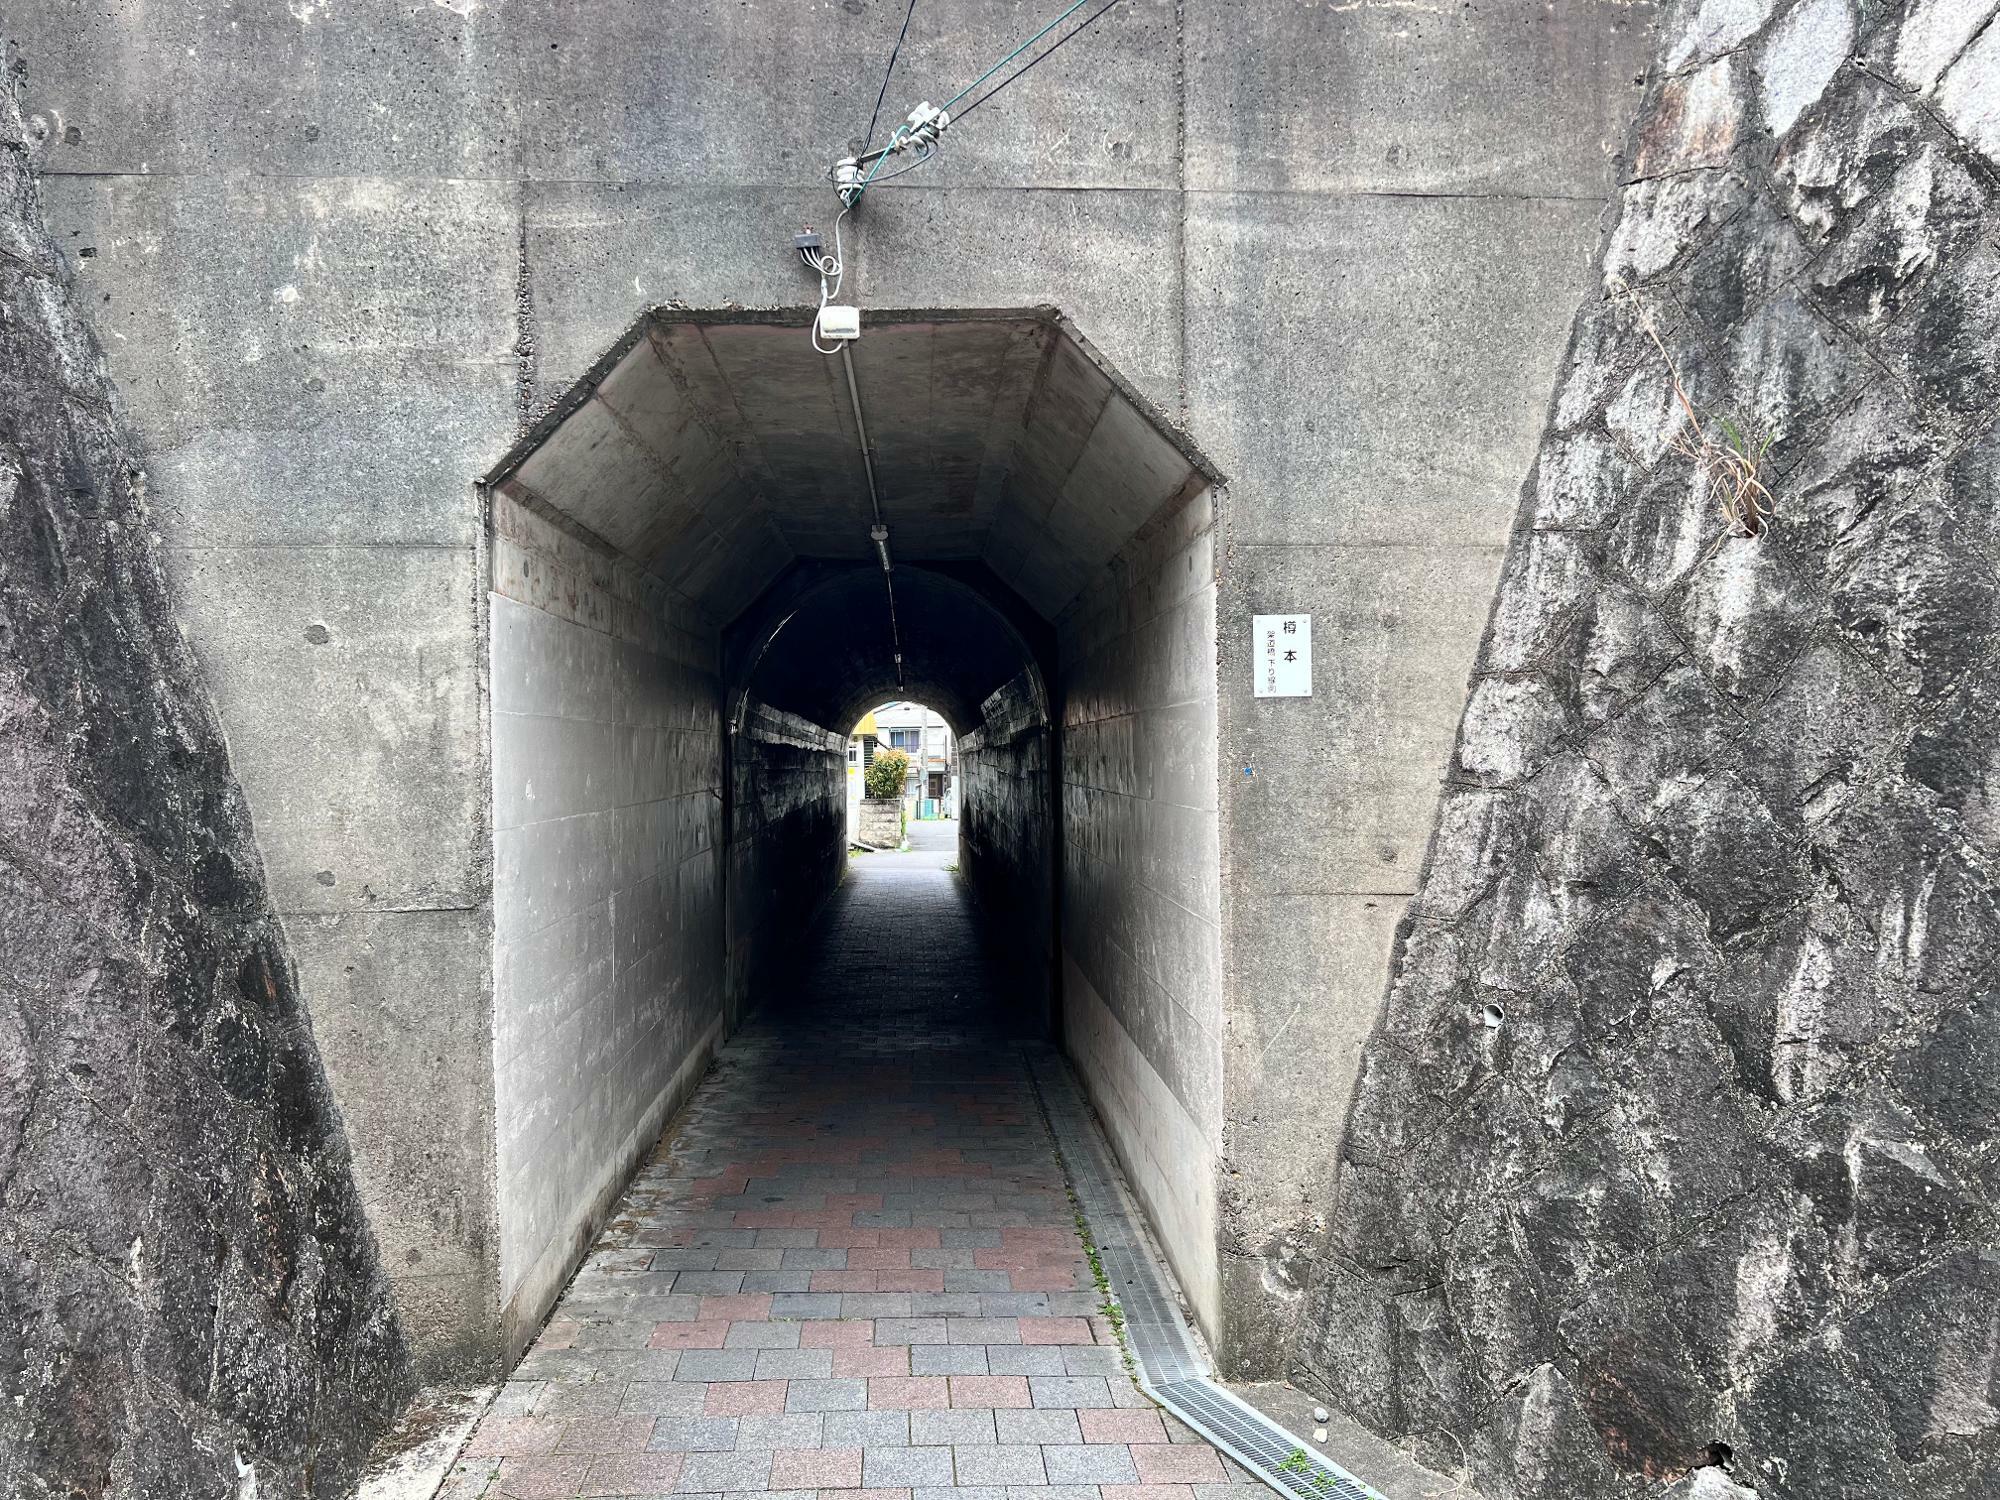 架道橋のJR河内磐船駅側の入り口。このちょうど上か、少し右にいったところが枚方市駅から5.8キロの地点